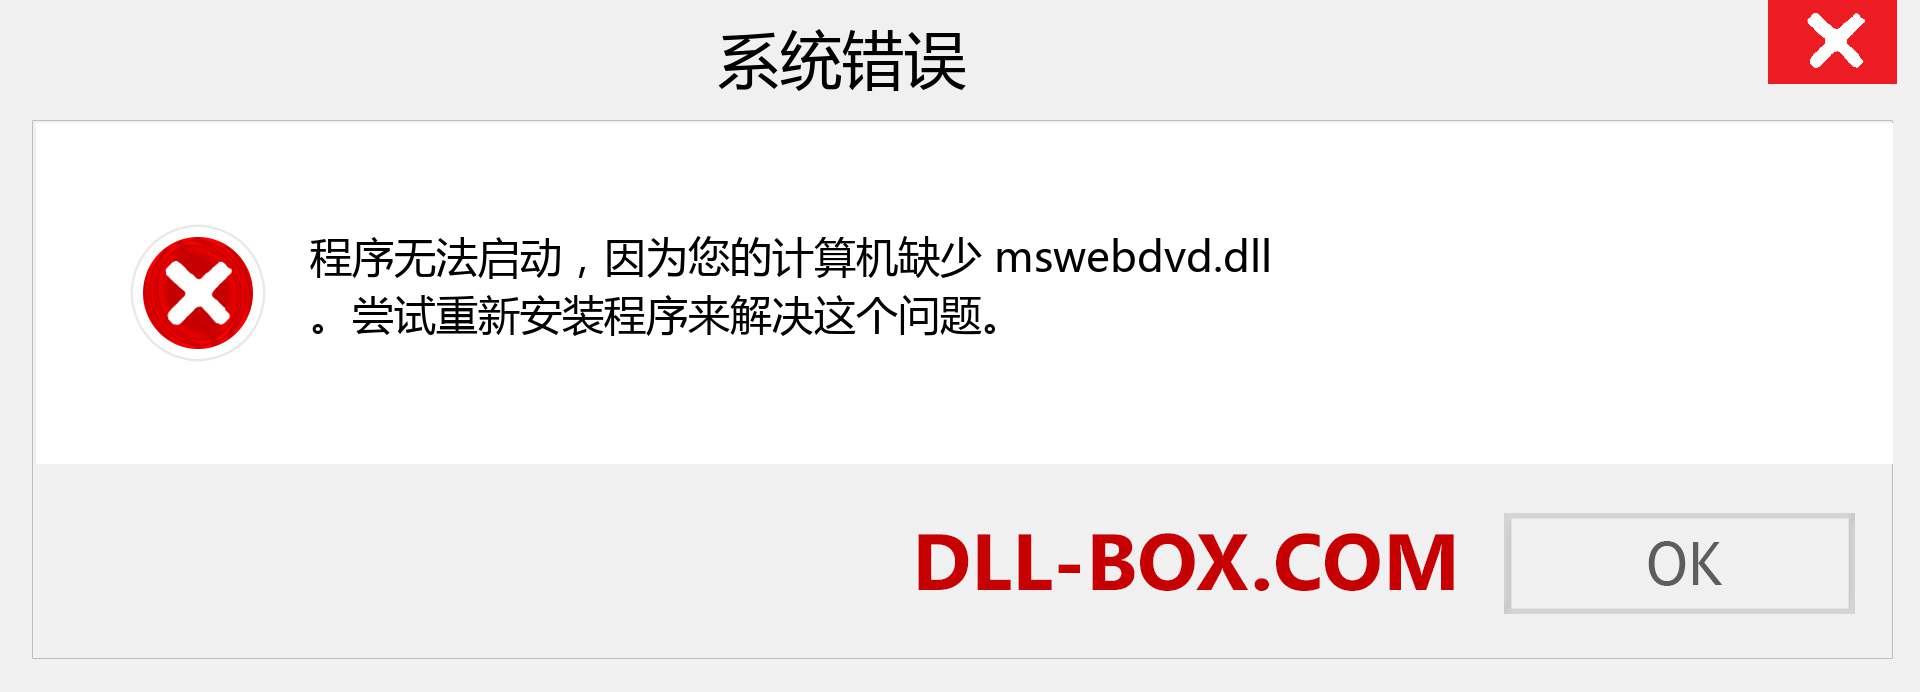 mswebdvd.dll 文件丢失？。 适用于 Windows 7、8、10 的下载 - 修复 Windows、照片、图像上的 mswebdvd dll 丢失错误